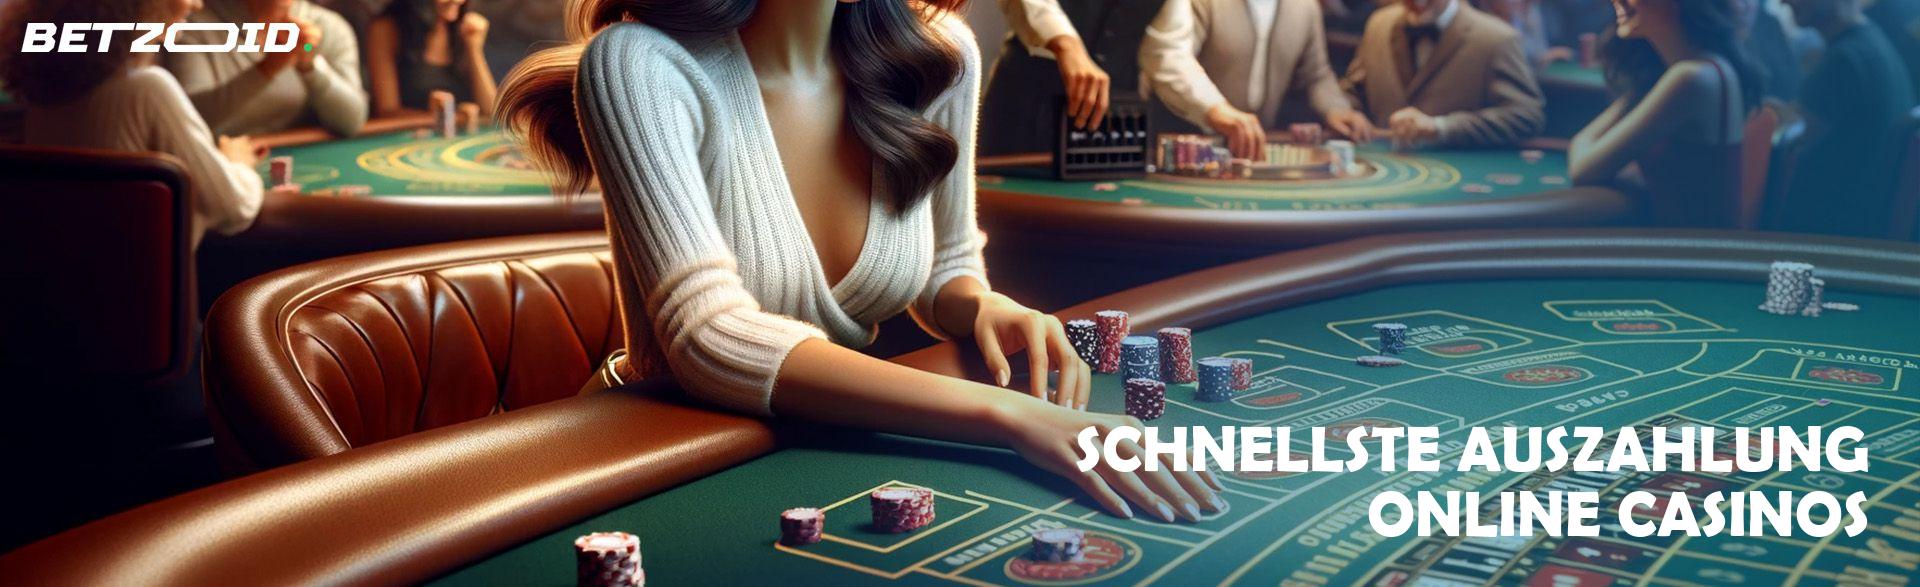 Schnellste Auszahlung Online Casinos.